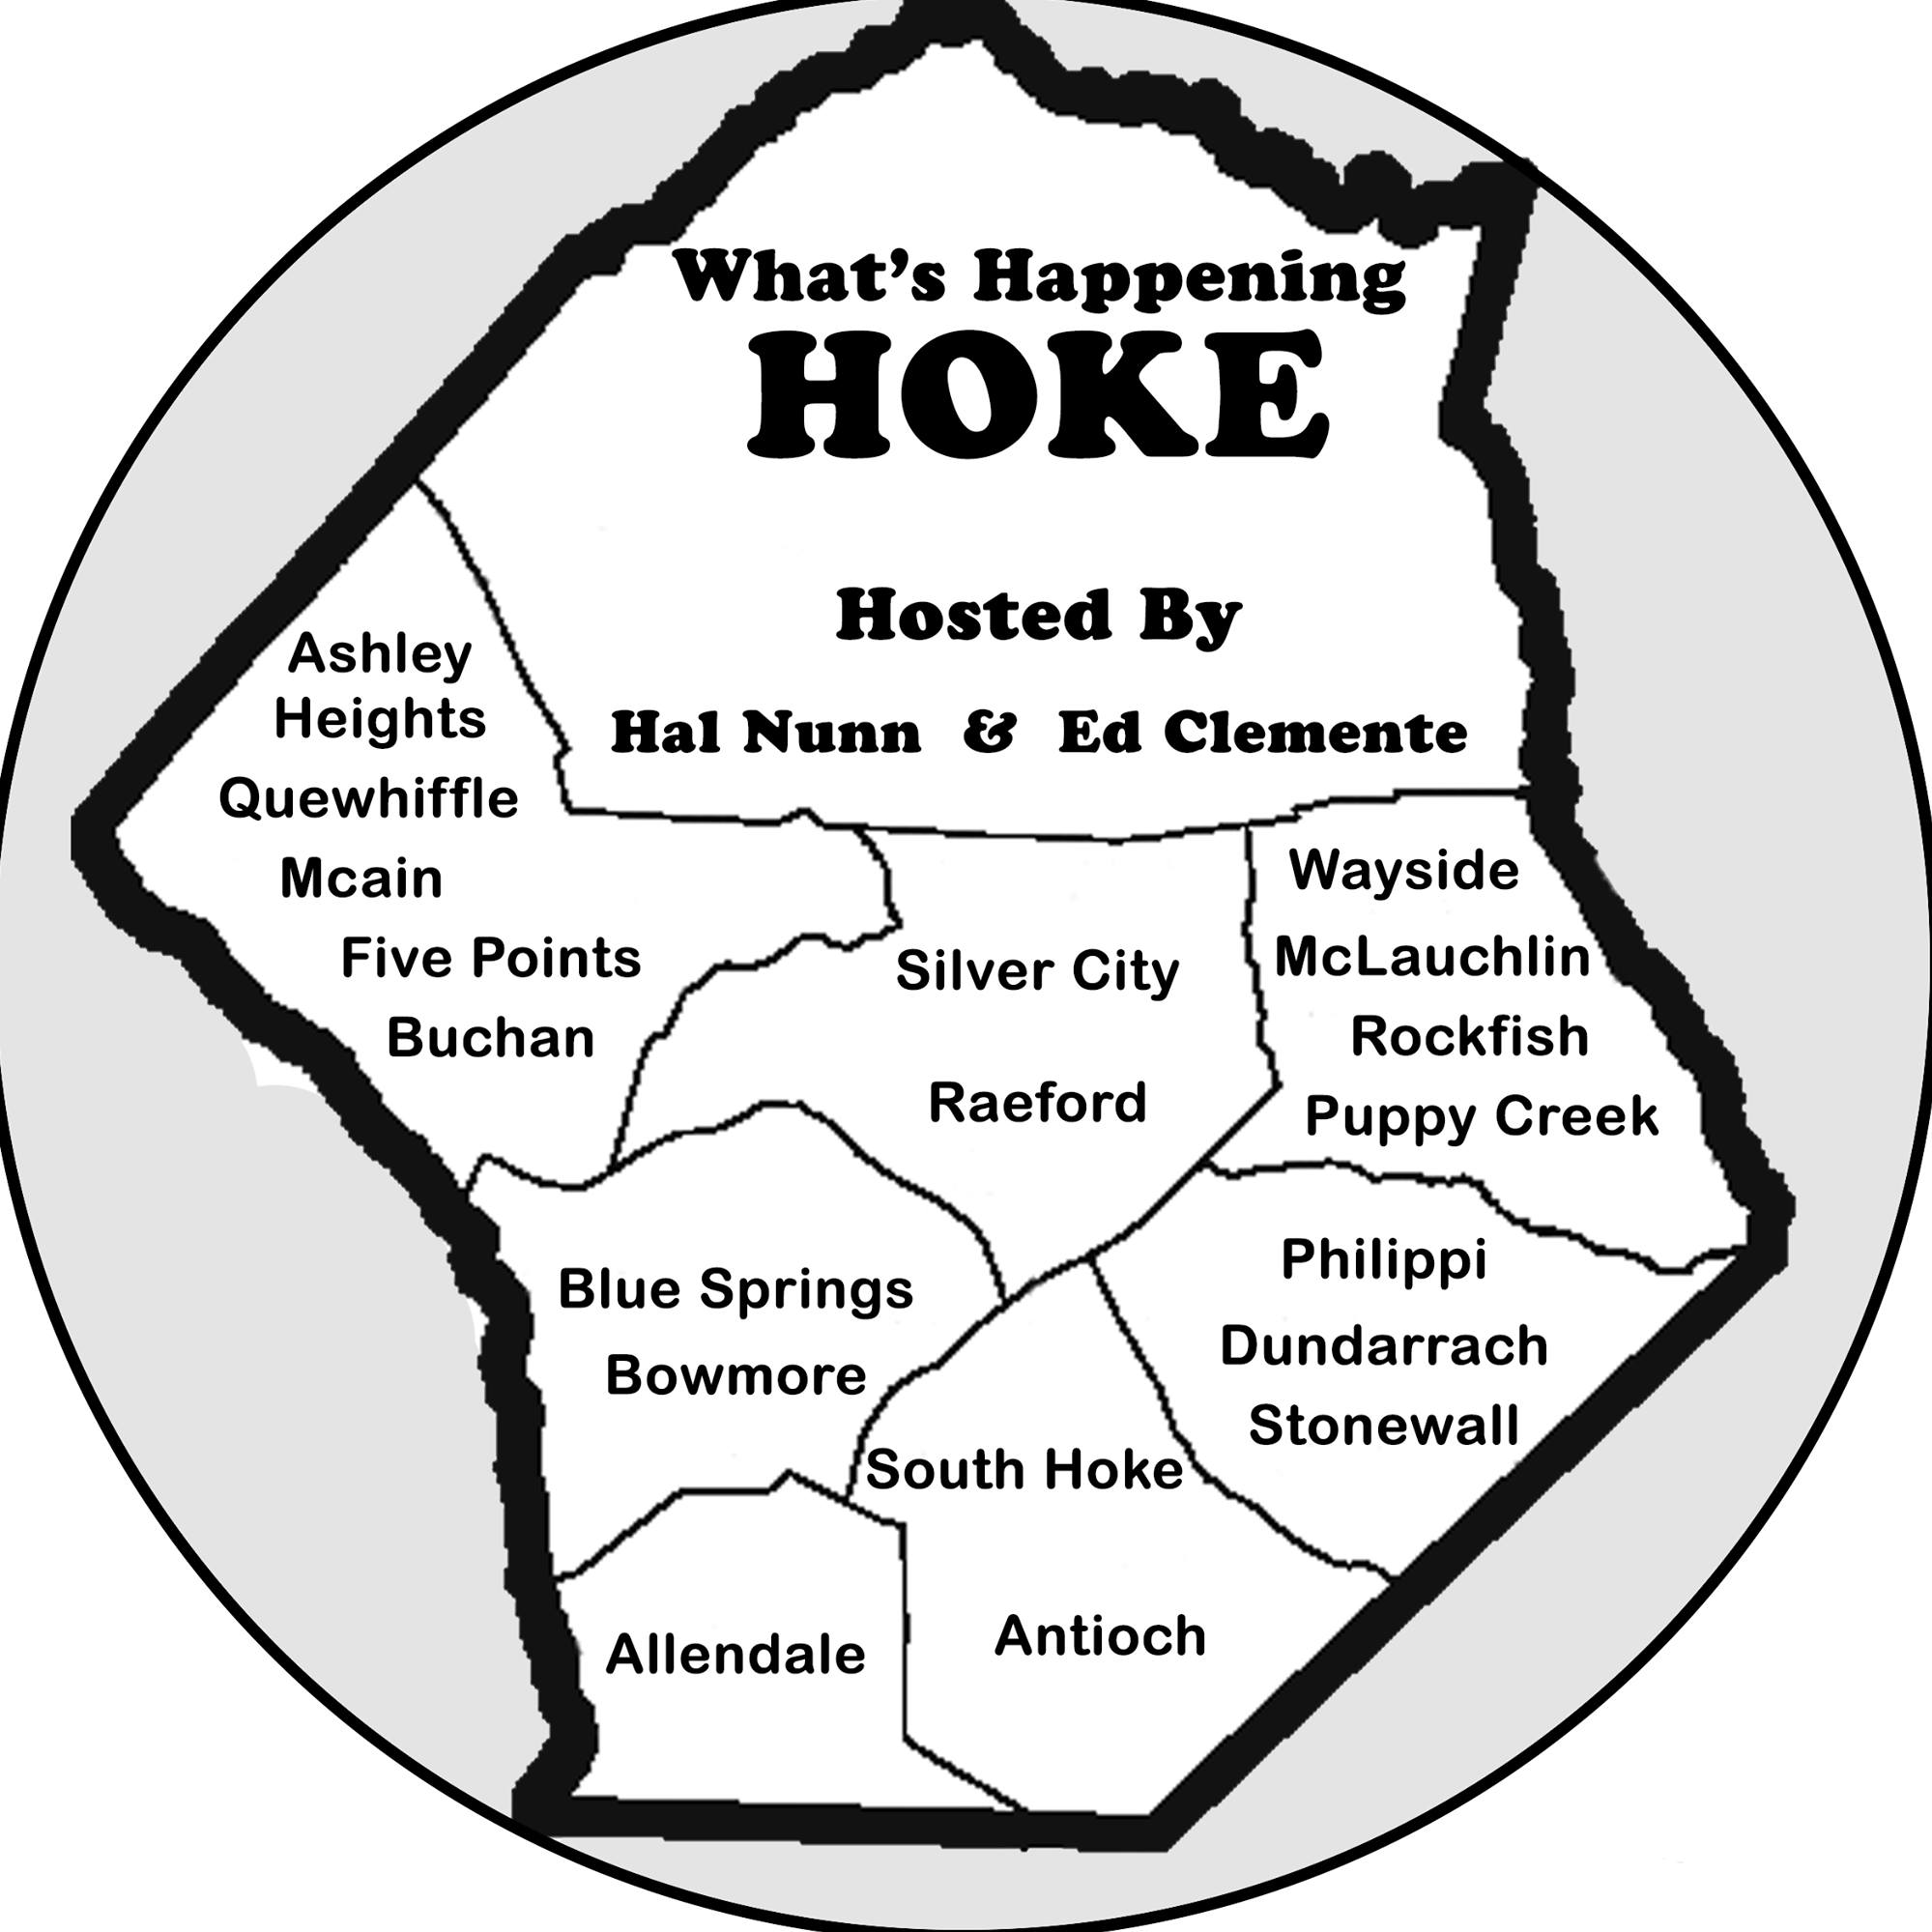 Hoke Media Group